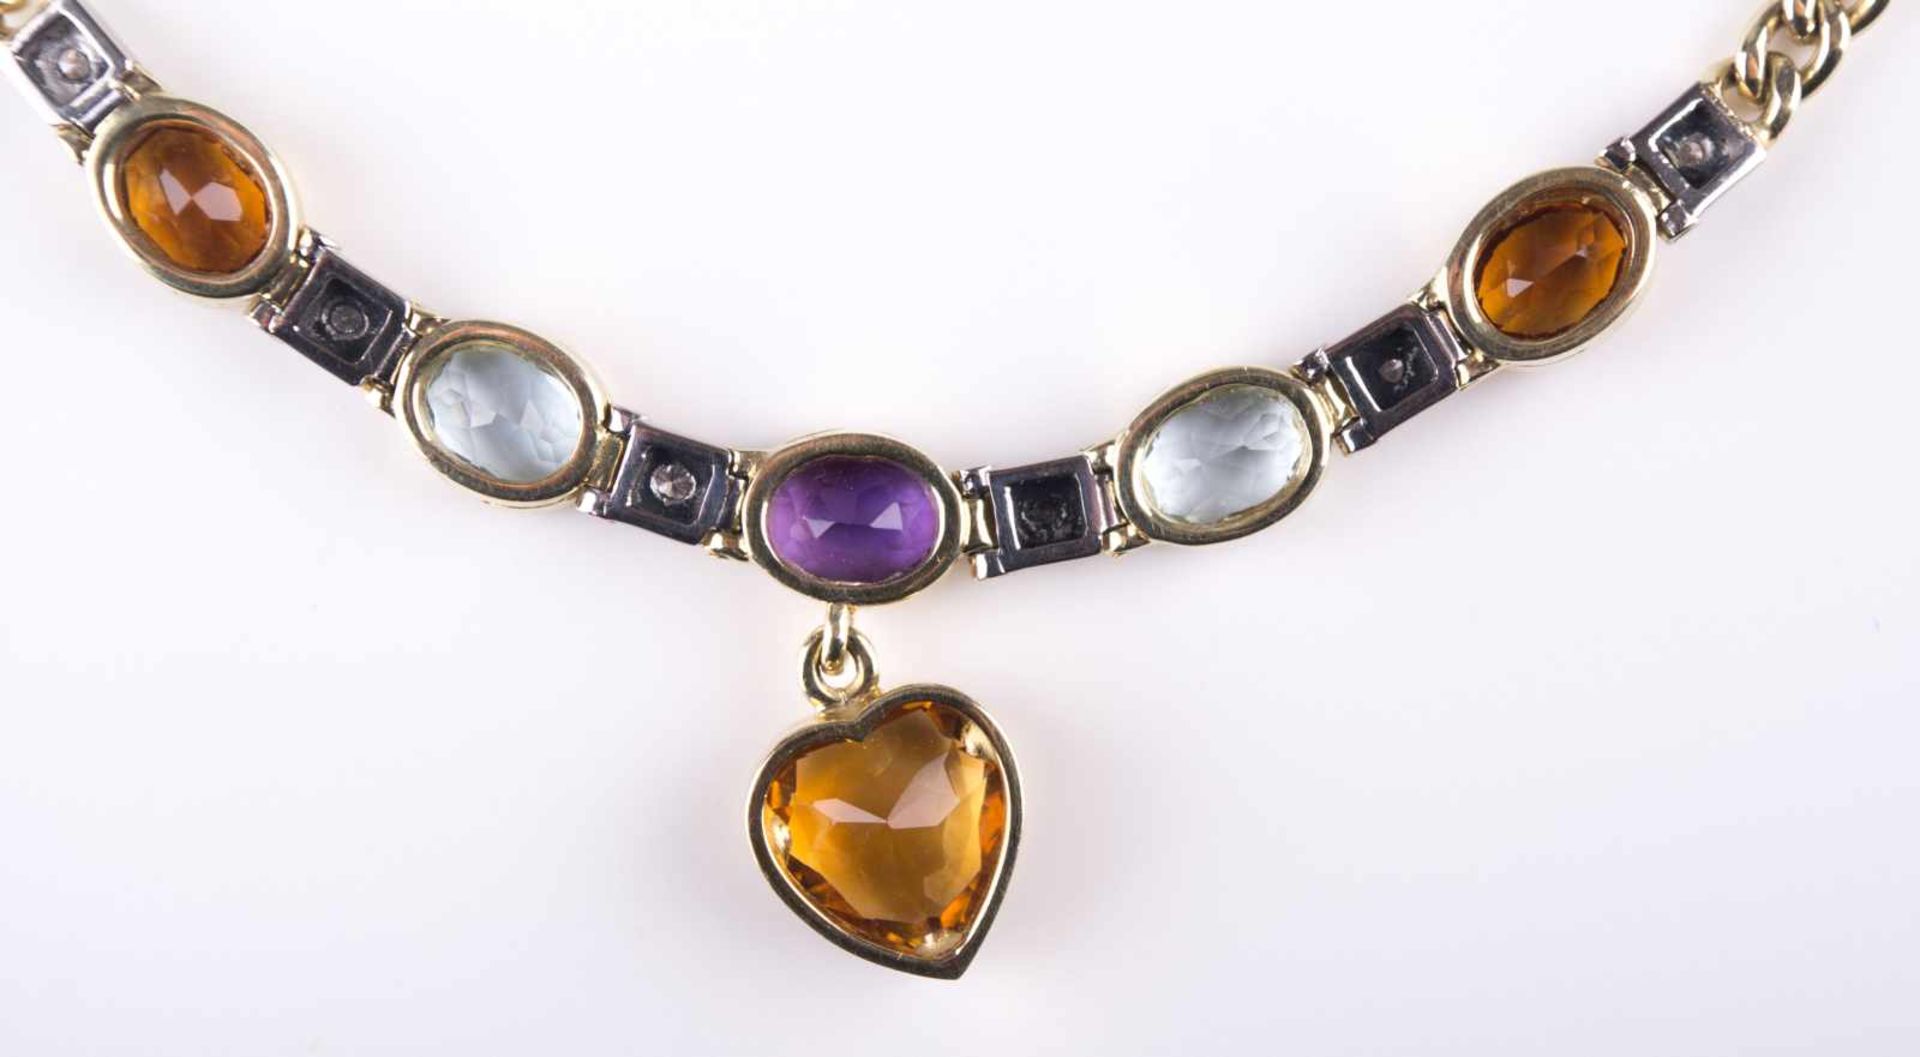 Schweres Damen-Collier / Heavy women´s necklace 585/000 GG, mit Edelsteinbesatz, Aquamarin, - Image 3 of 4